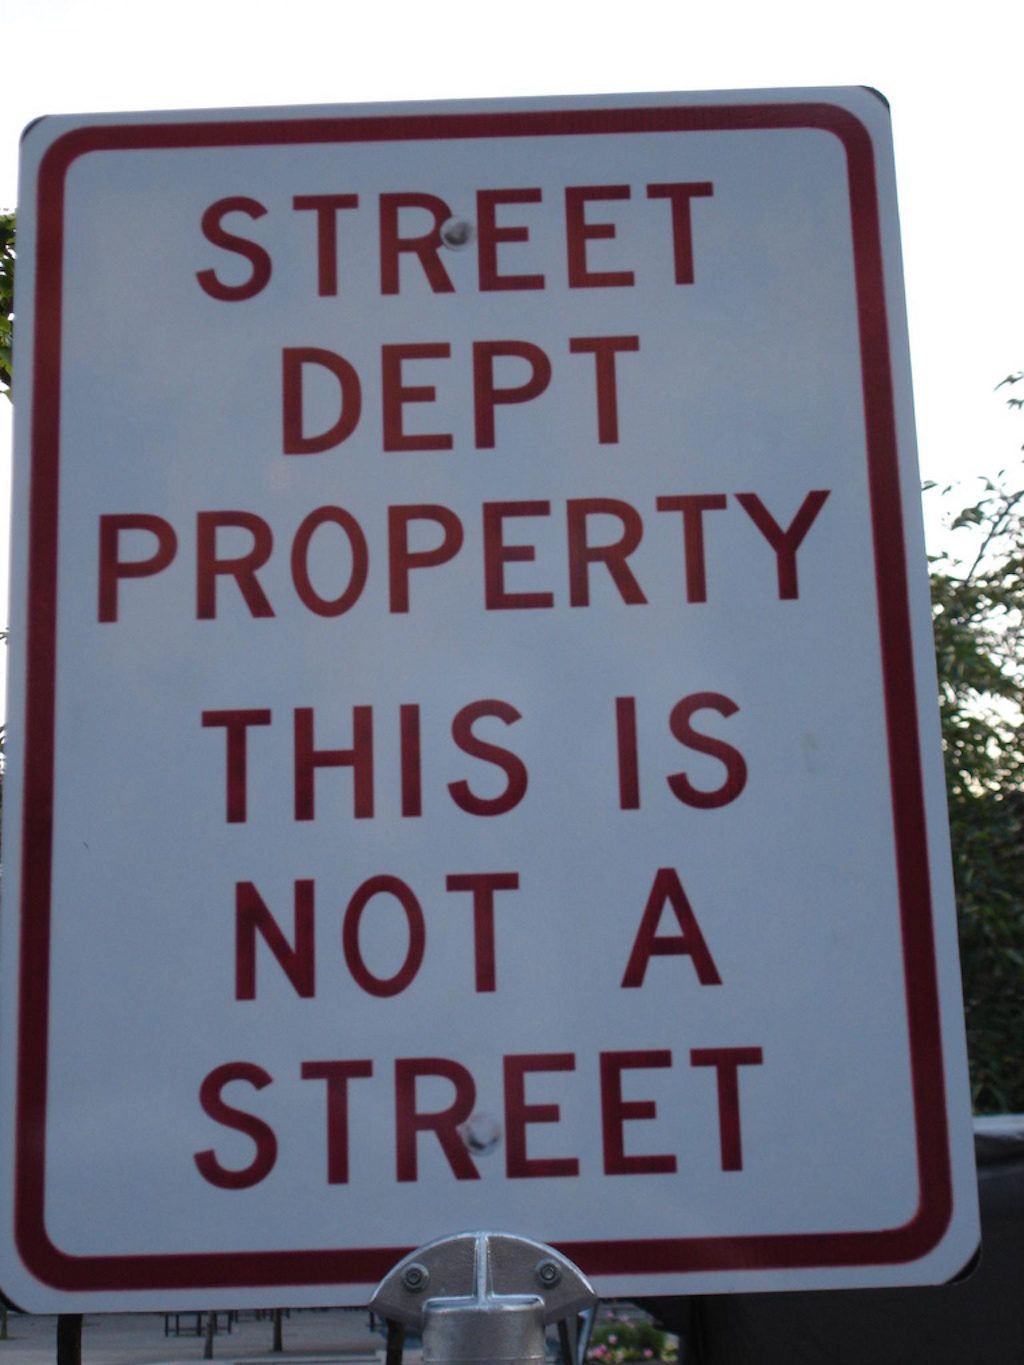 Tai nėra gatvių įspėjamieji kelio ženklai